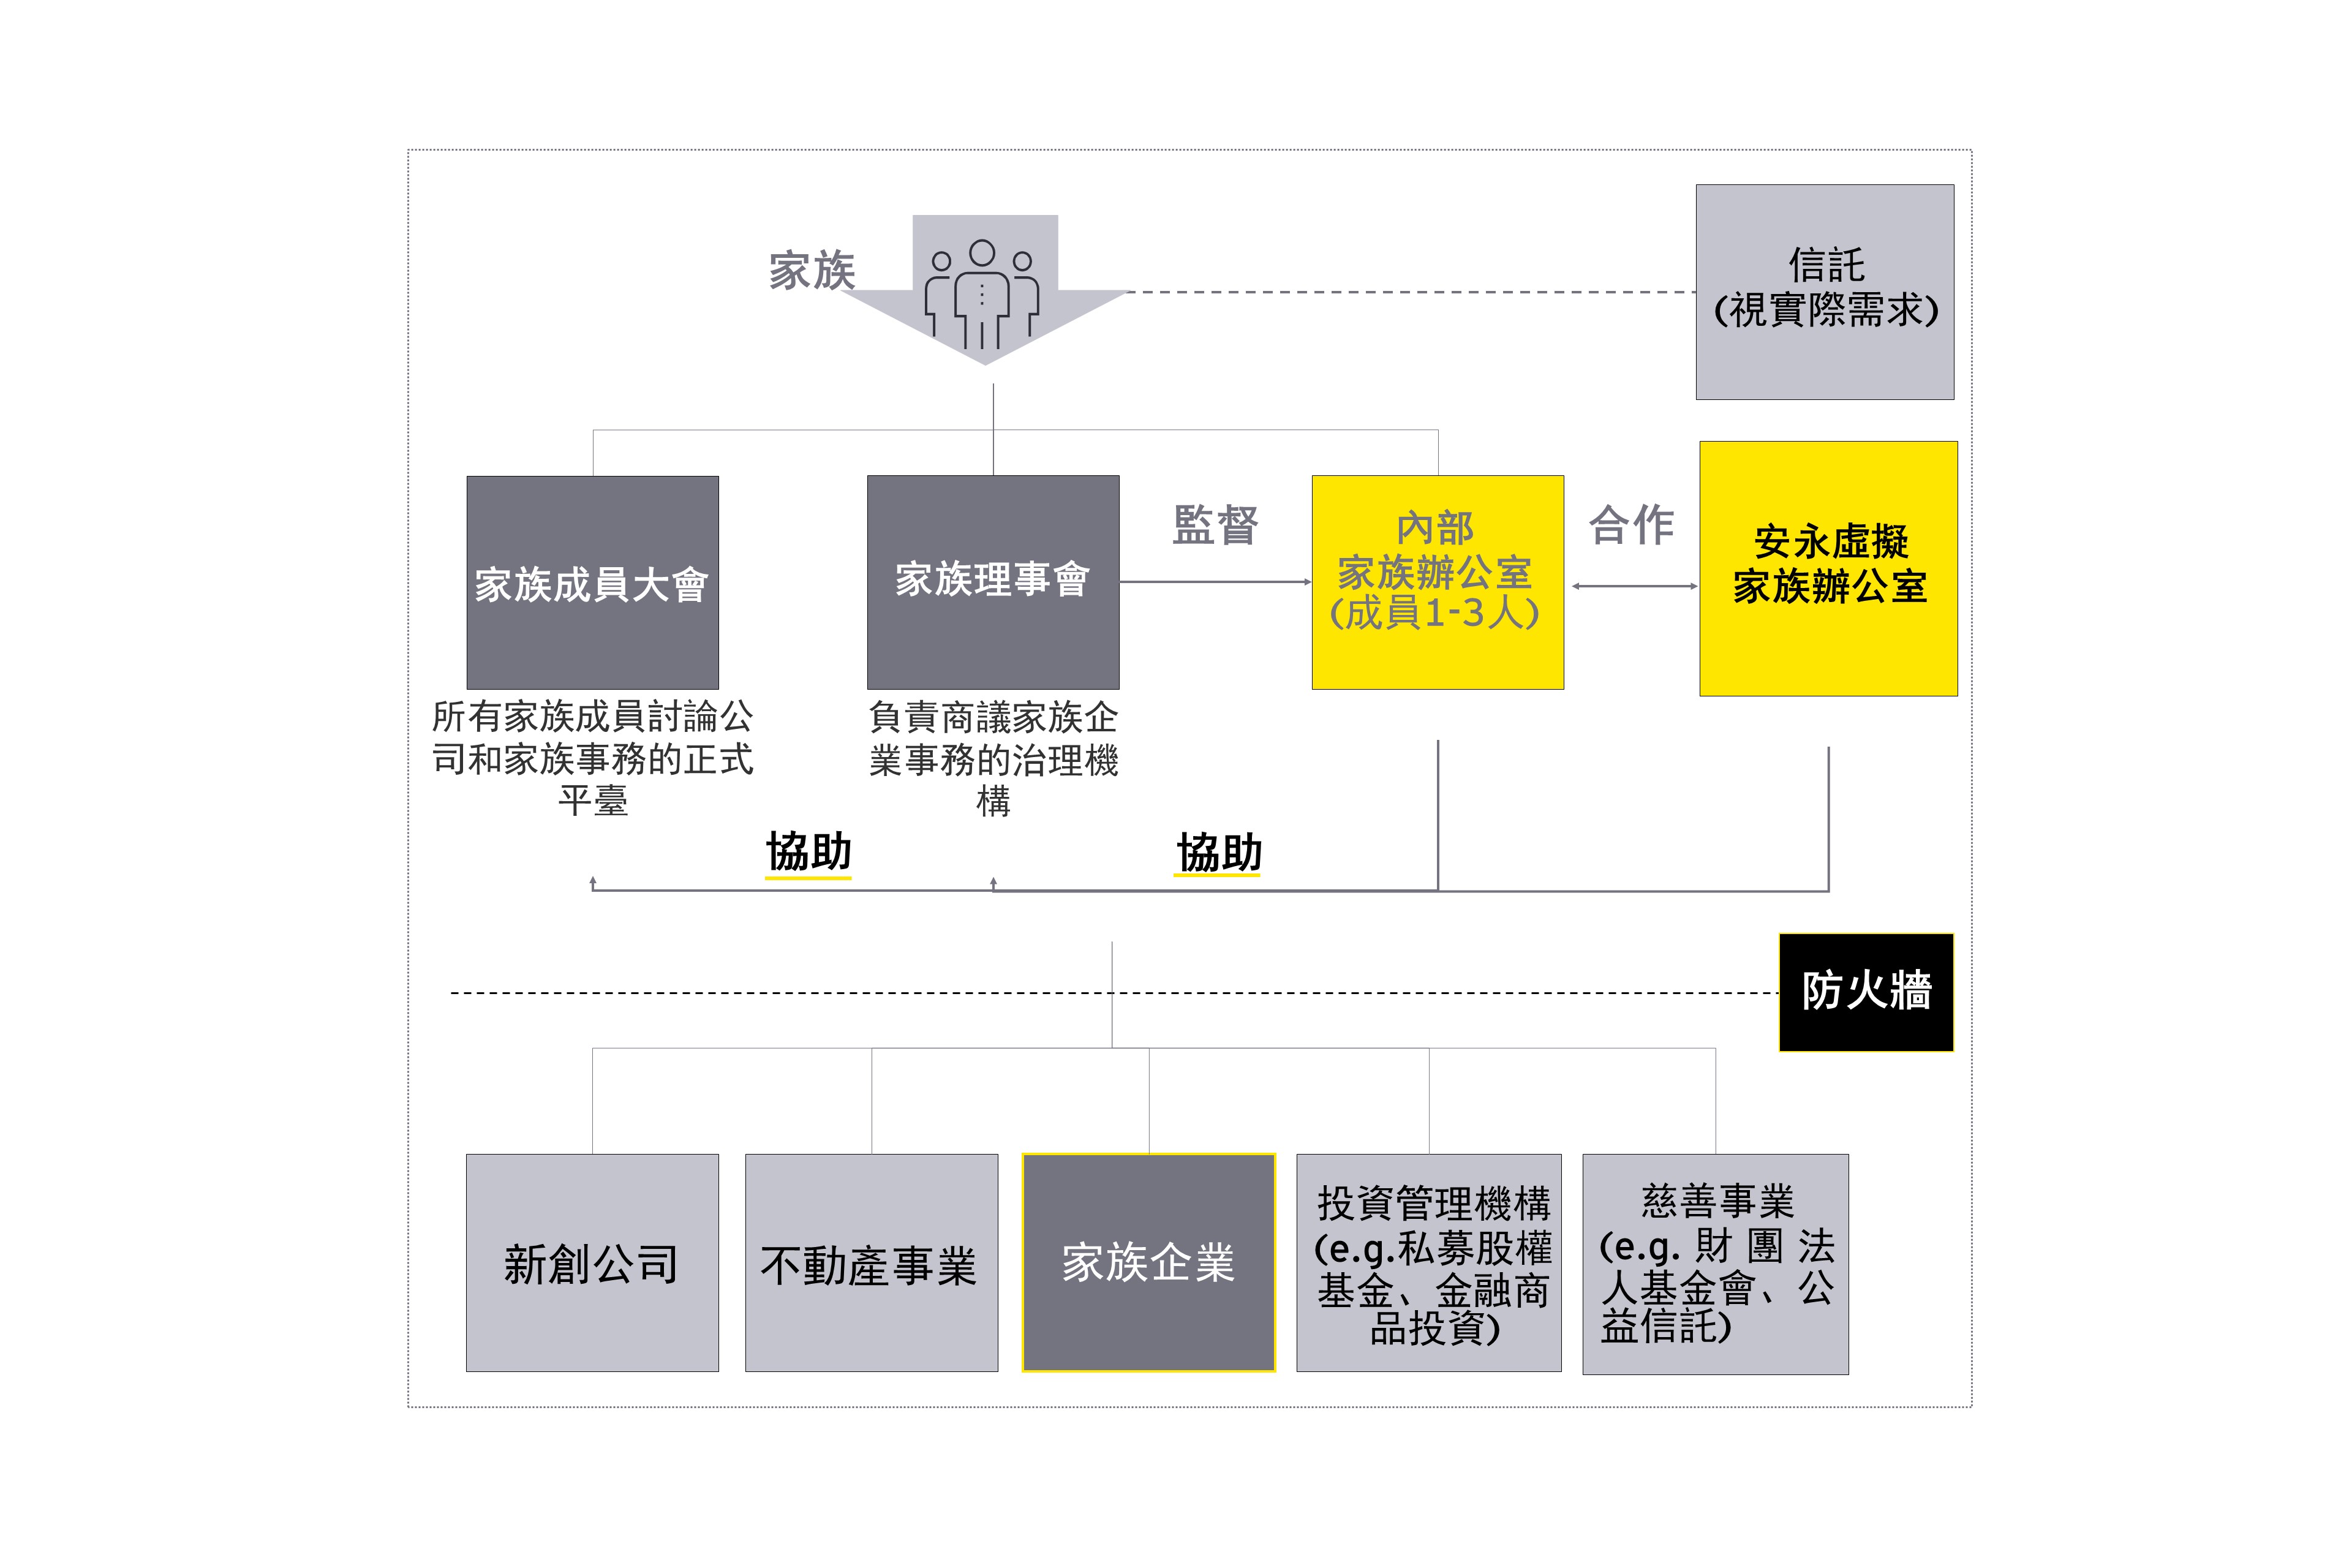 亞洲家族辦公室風起雲湧 適合台灣家族企業發展的未來模式為何 安永台灣